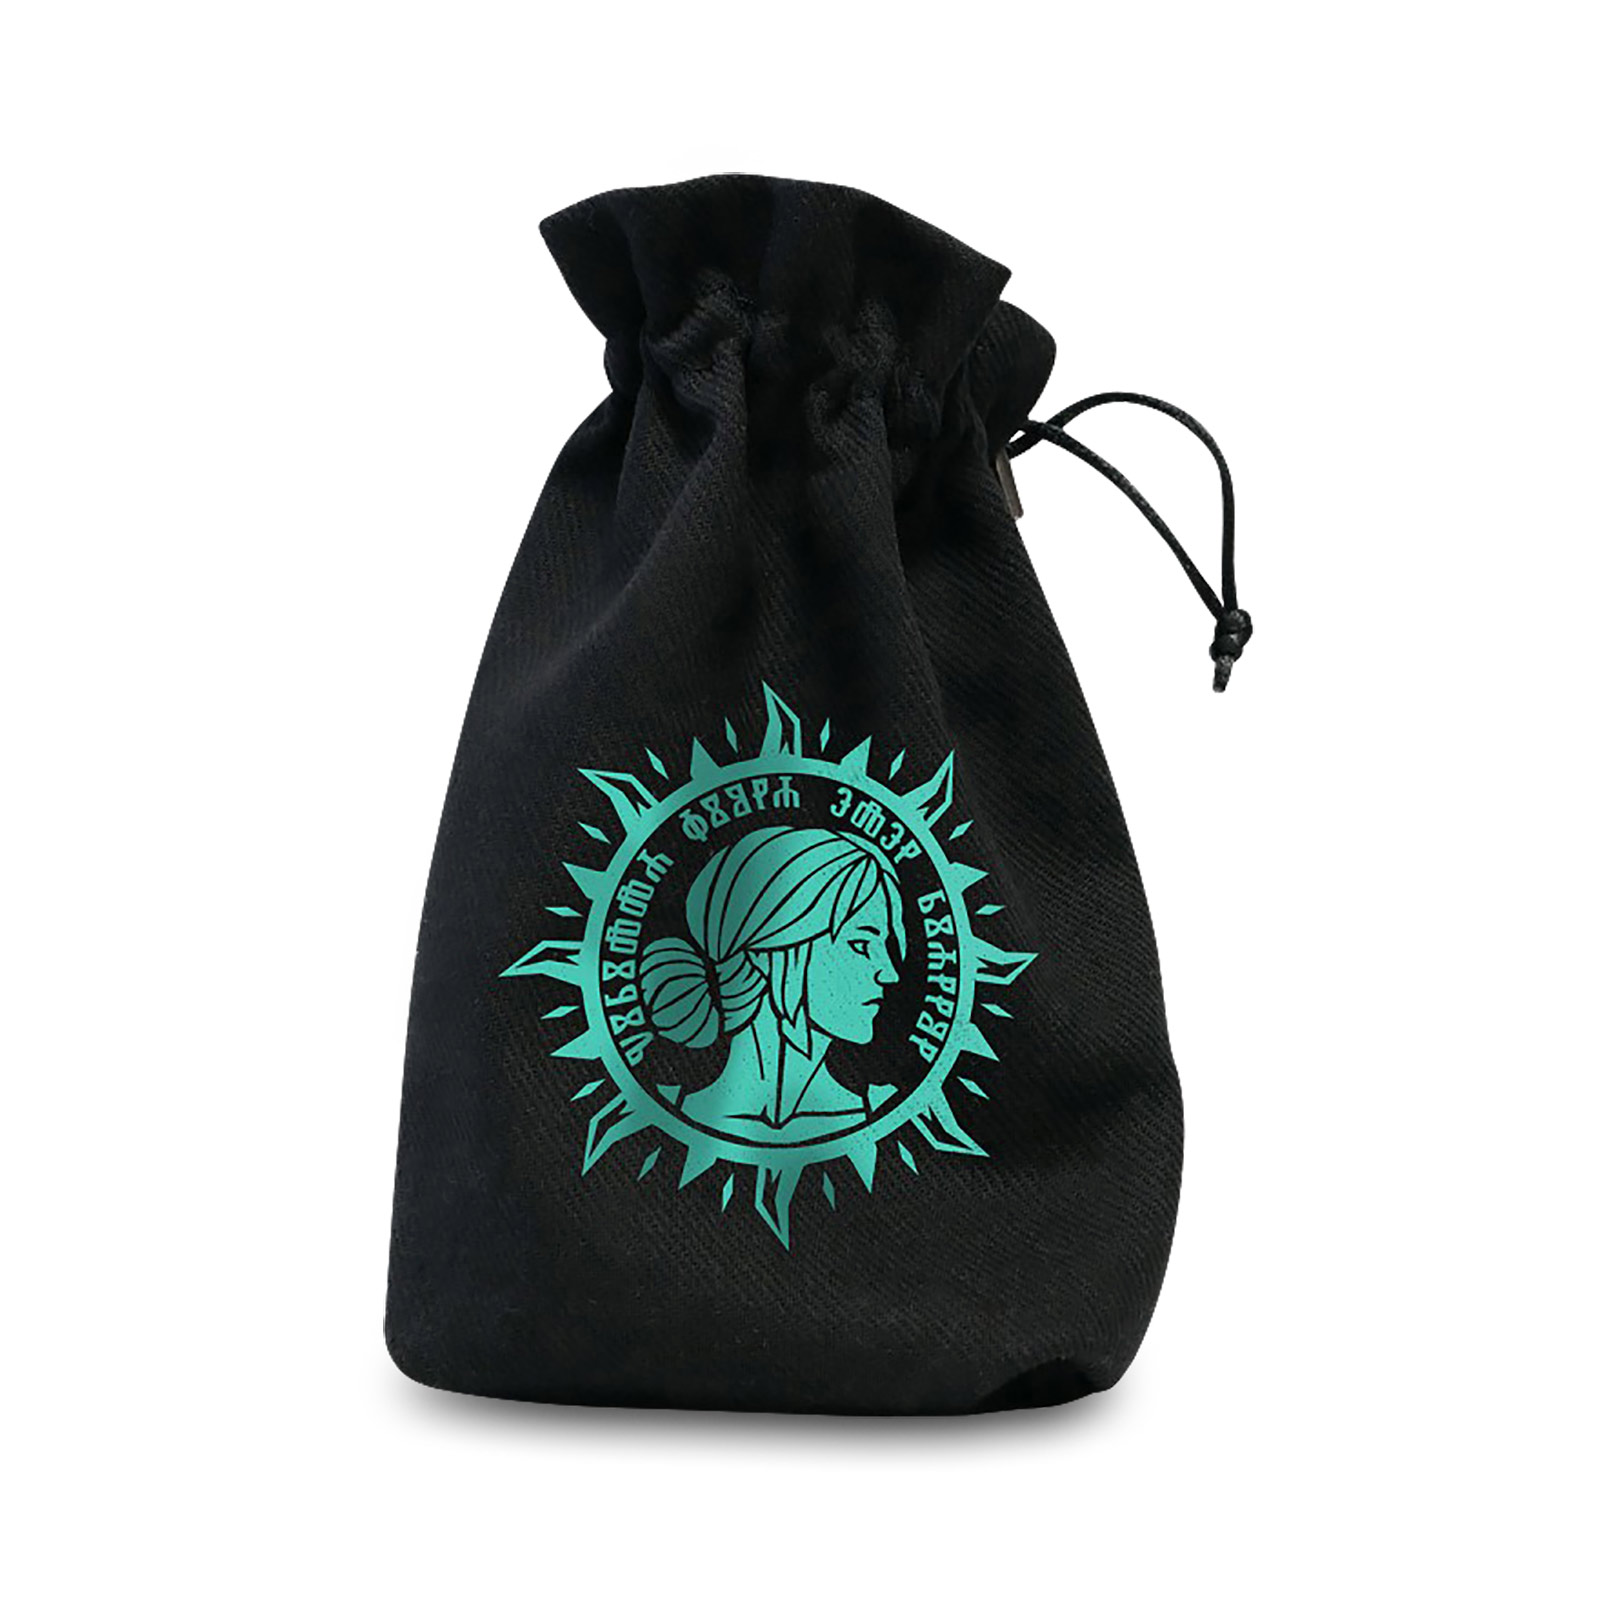 Witcher - Elder Blood Dice Bag Black